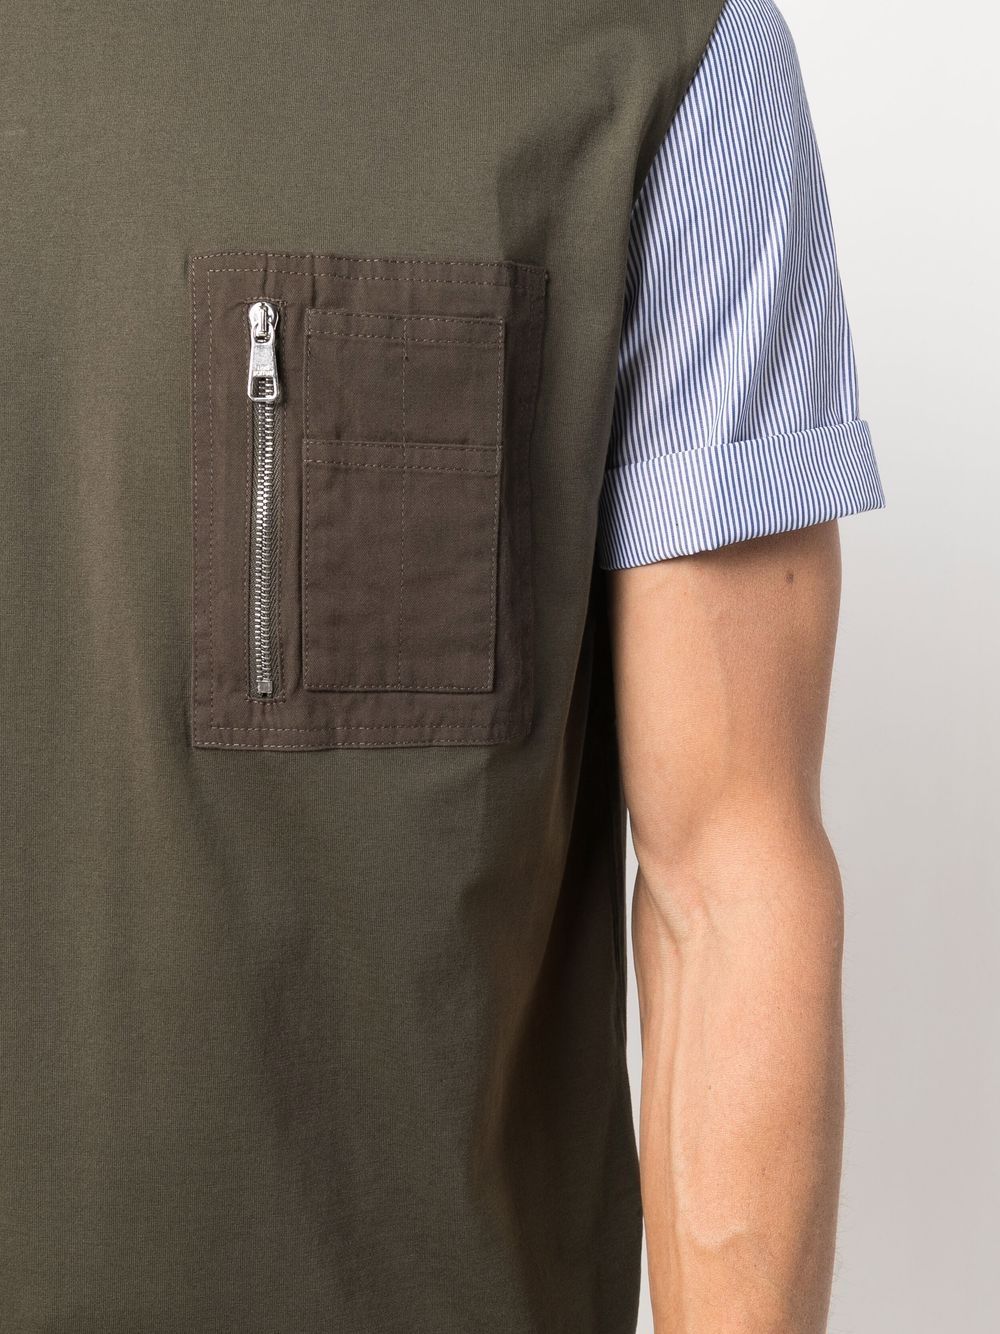 фото Neil barrett футболка с контрастной вставкой и карманом на молнии